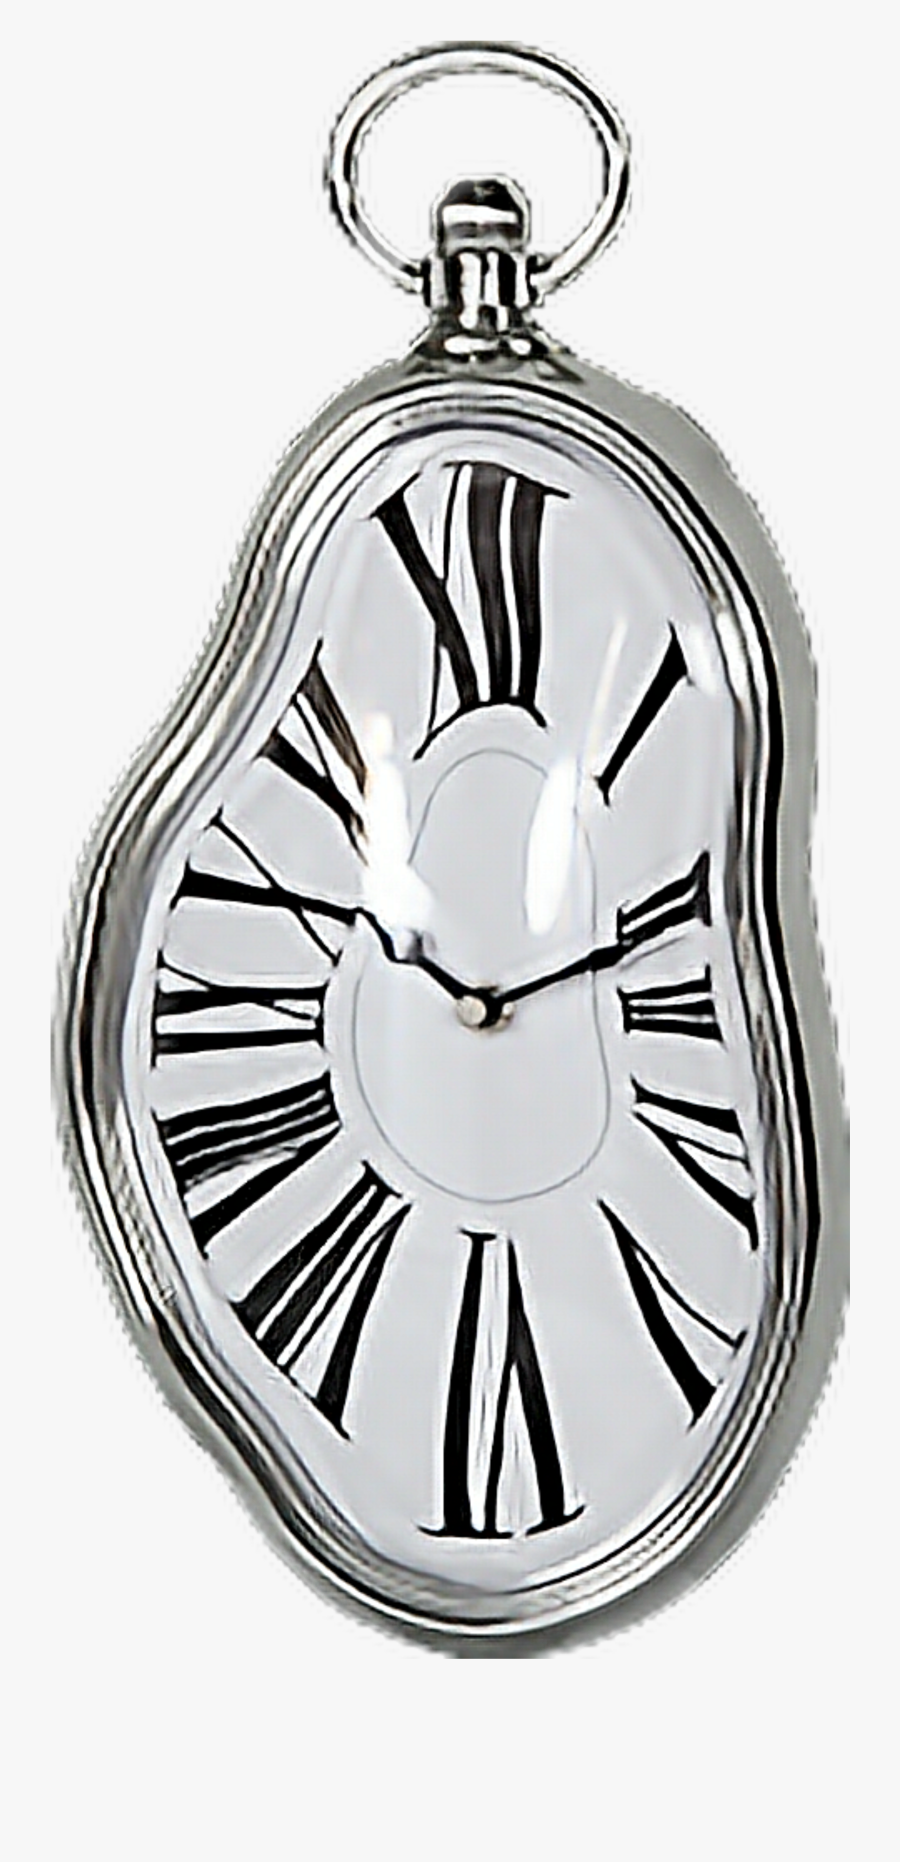 Transparent Melting Clock Clipart - Wall Clock Dali, Transparent Clipart